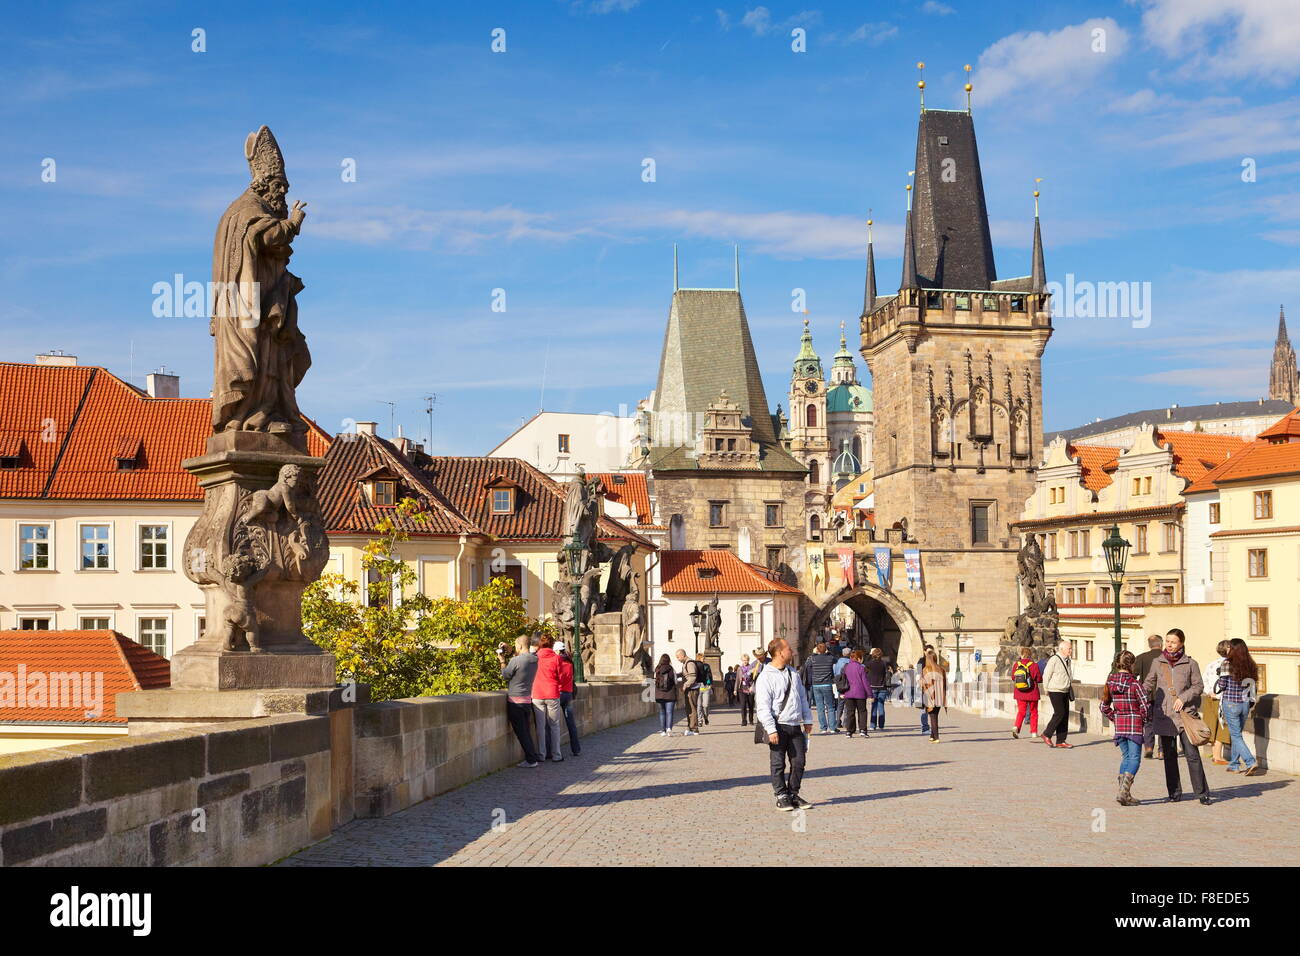 La ciudad antigua de Praga - turística sobre el puente de Carlos, la República Checa, Europa Foto de stock